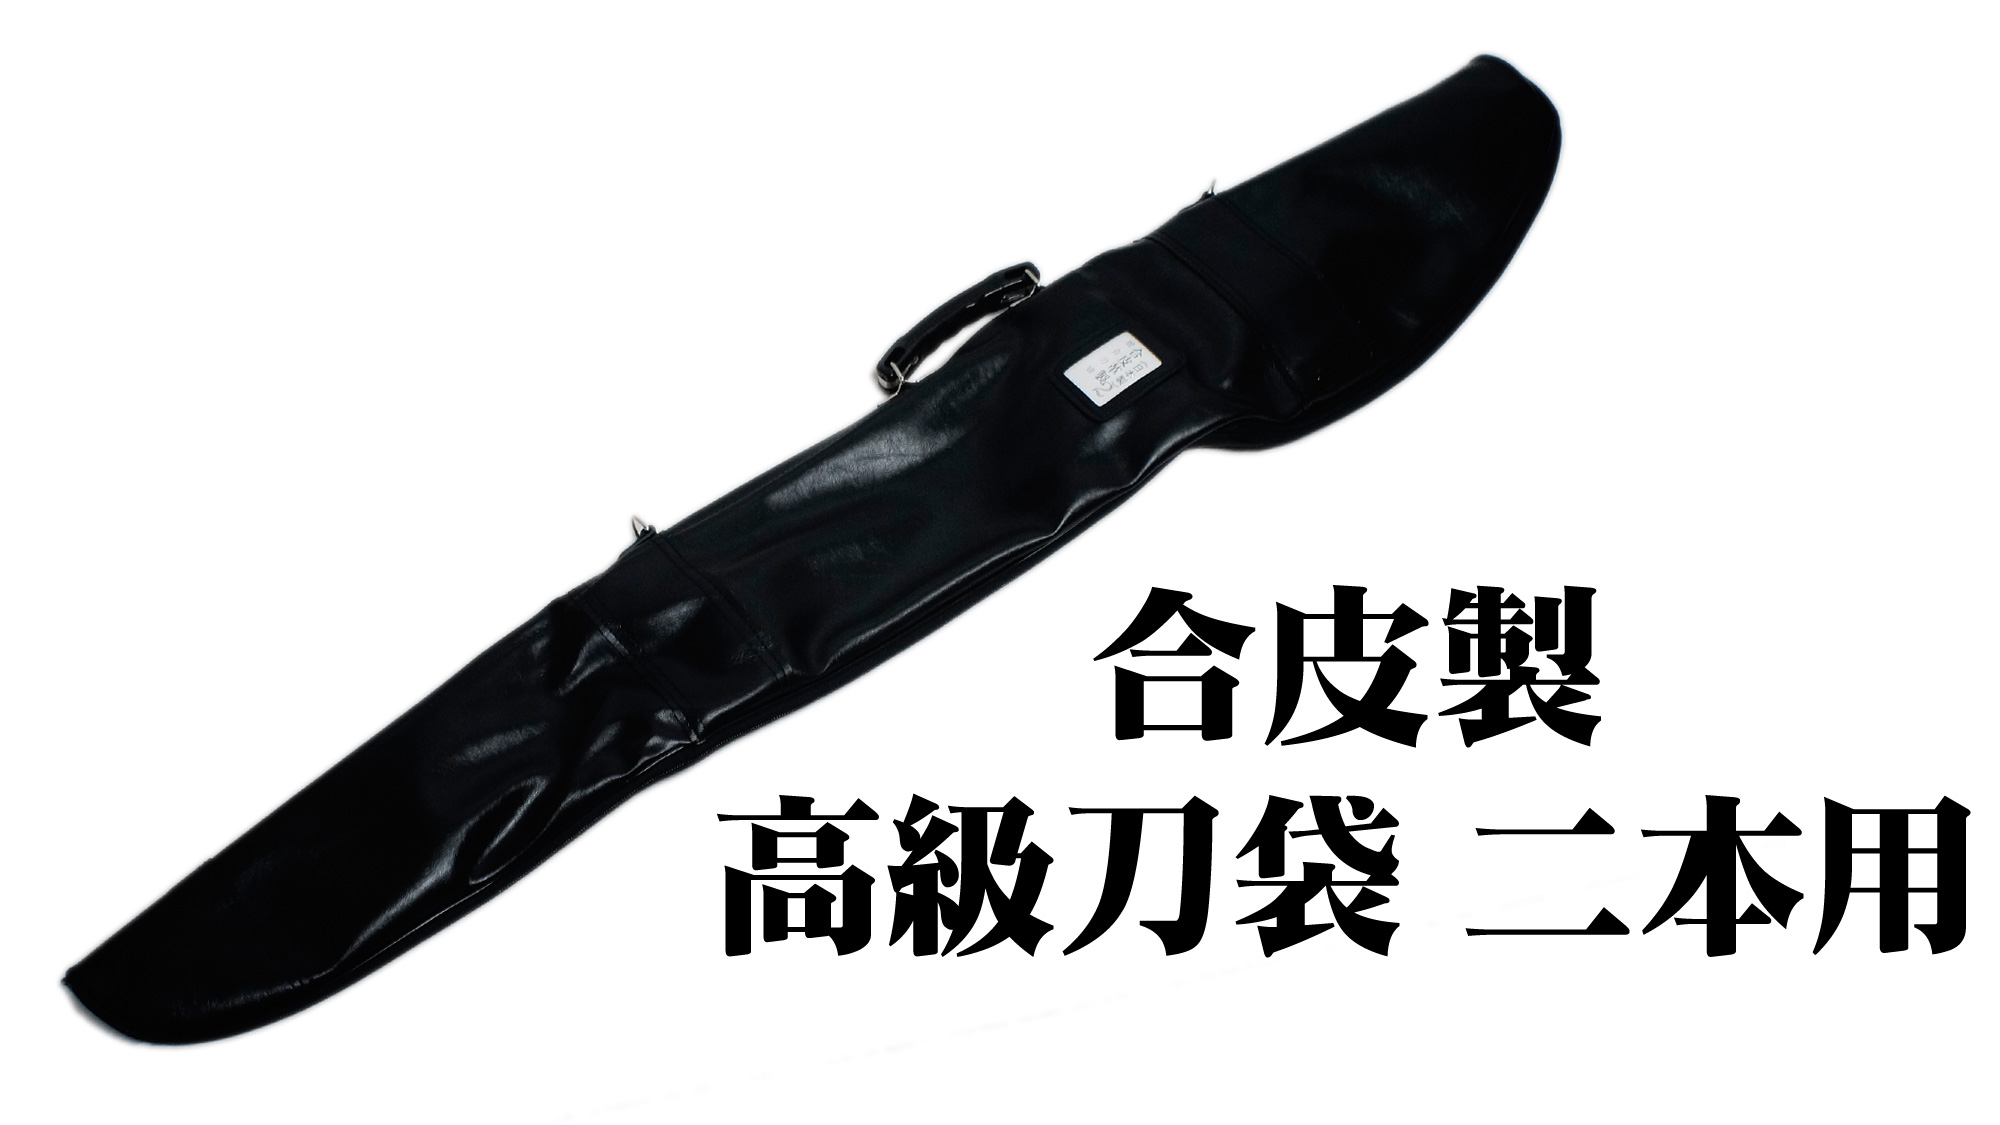 匠刀房 合皮製 高級刀袋 二本用 ZK-103 – 居合 刀入れ | 日光 匠家